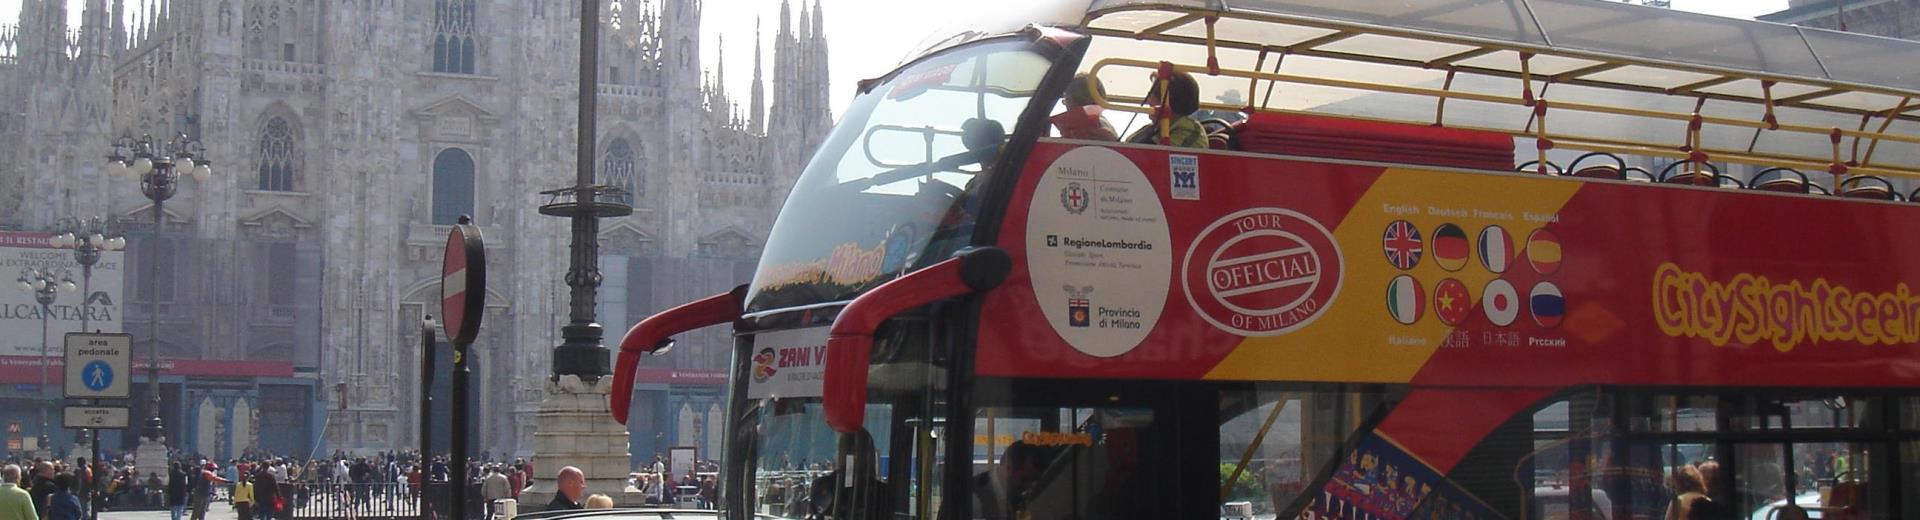 De bus panoramique sur la Piazza Duomo